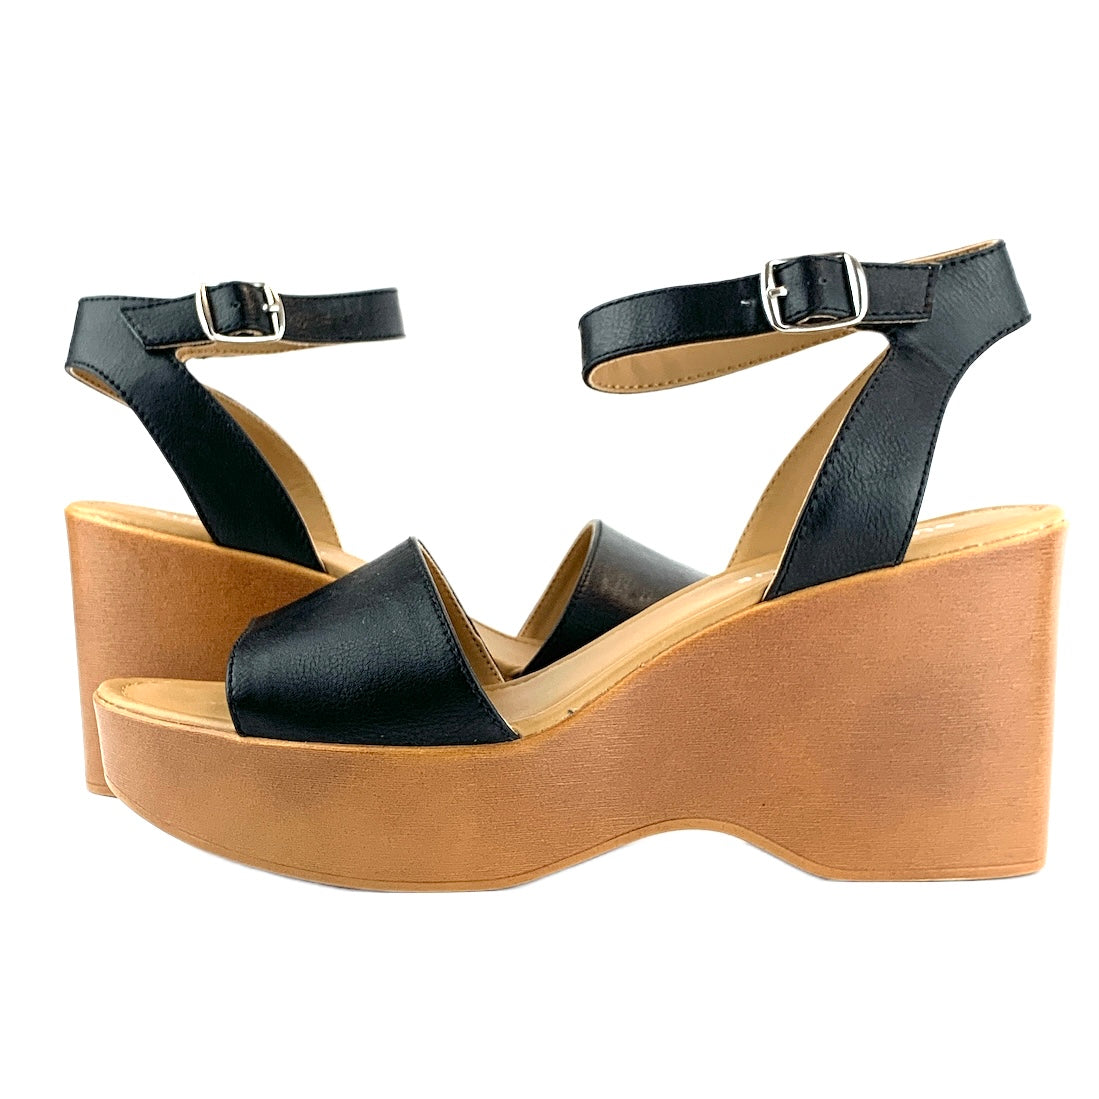 AUDREEYP Platform Sandals Women's Shoes